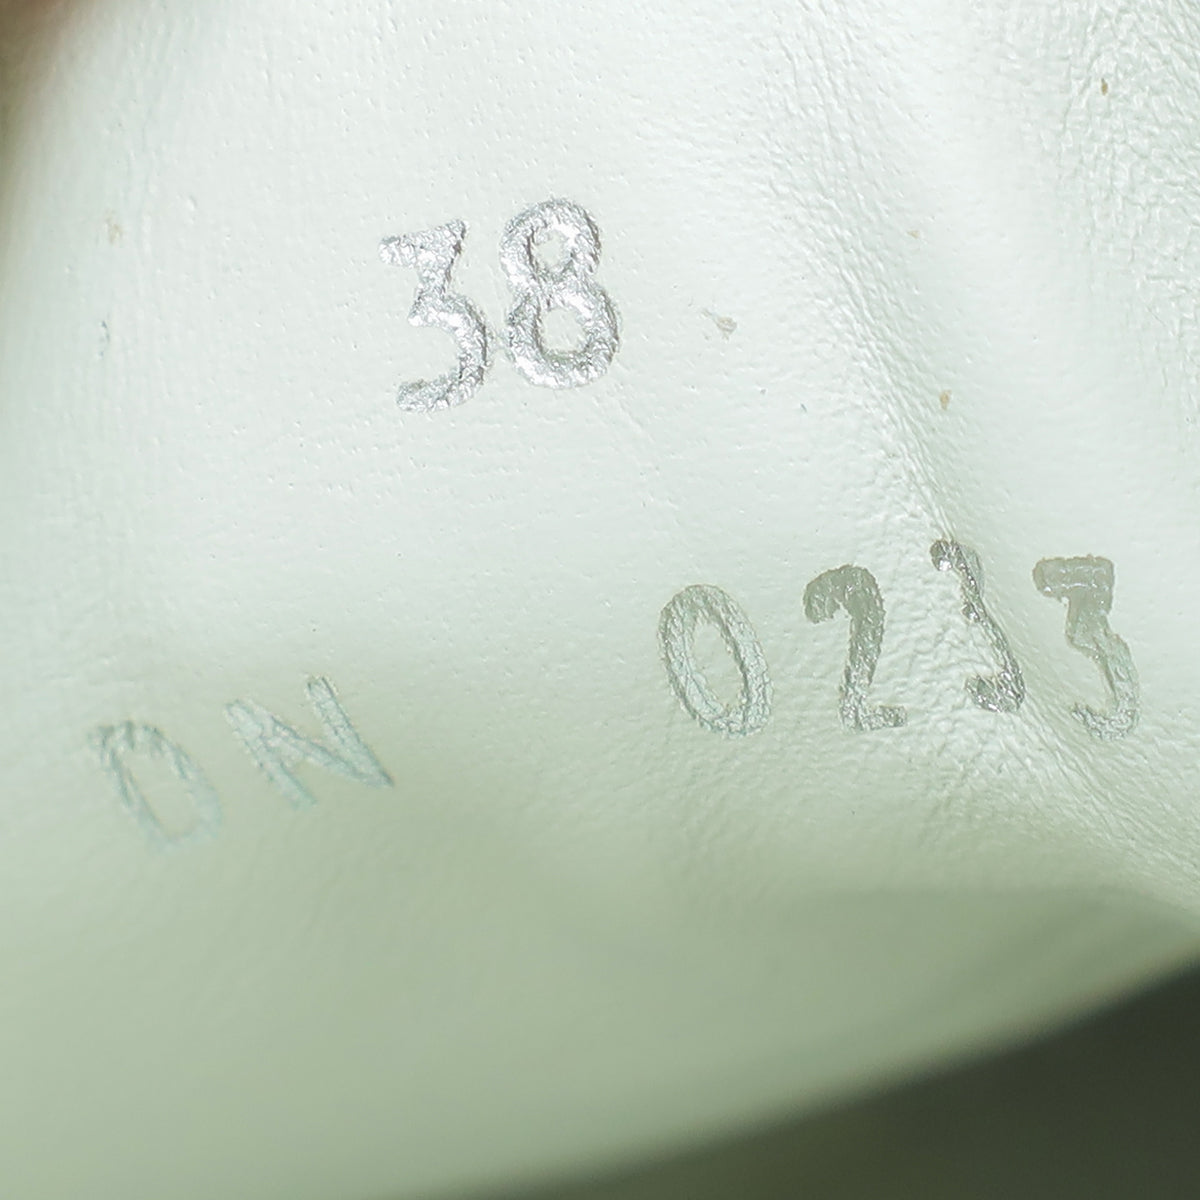 Givenchy Bicolor City Sport Denim Strap Slip on Sneaker 38